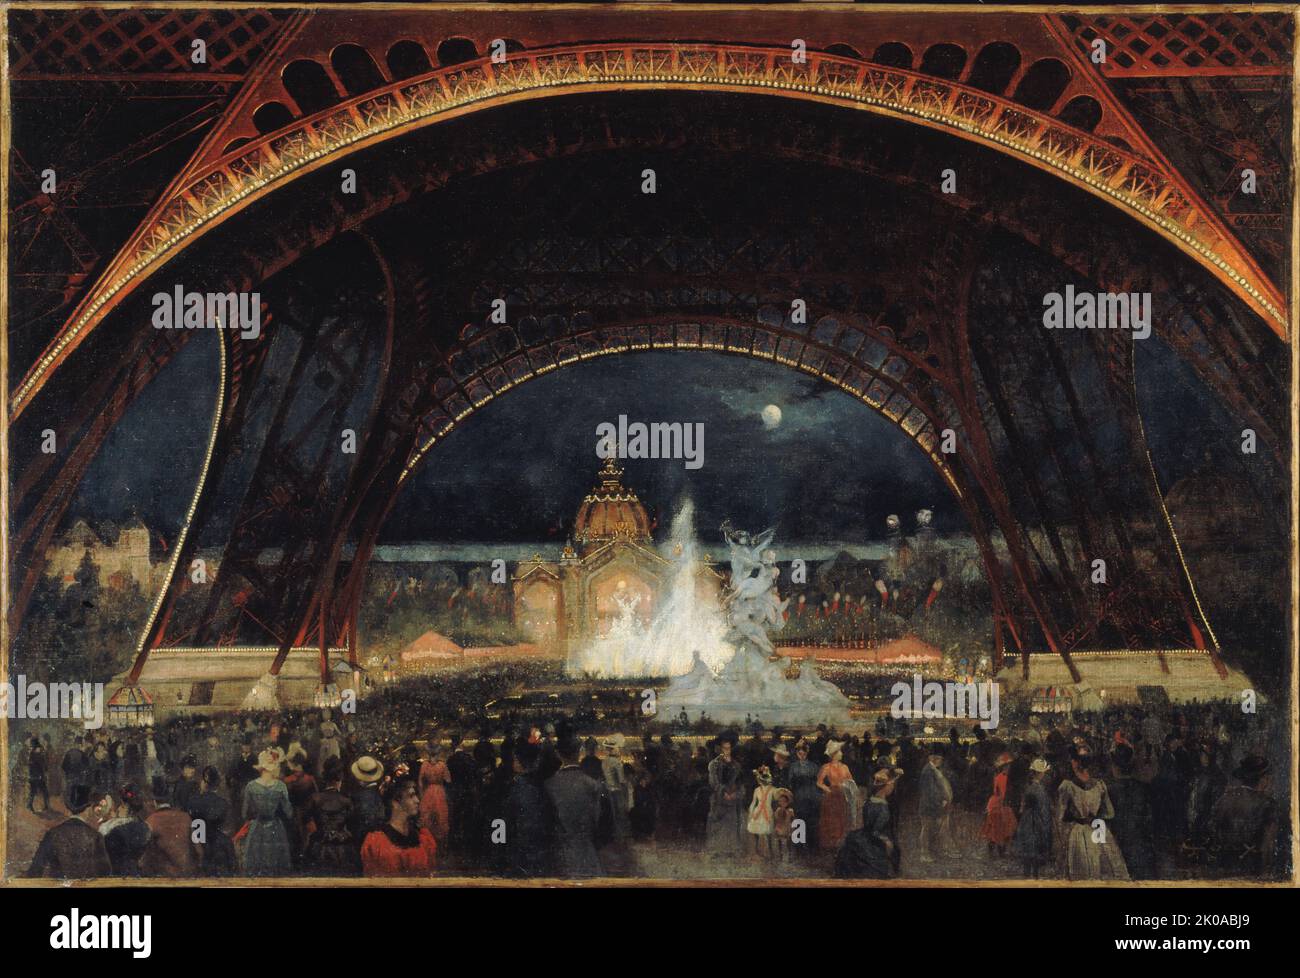 Nachtfest auf der Weltausstellung von 1889, unter dem Eiffelturm, c1889. Stockfoto